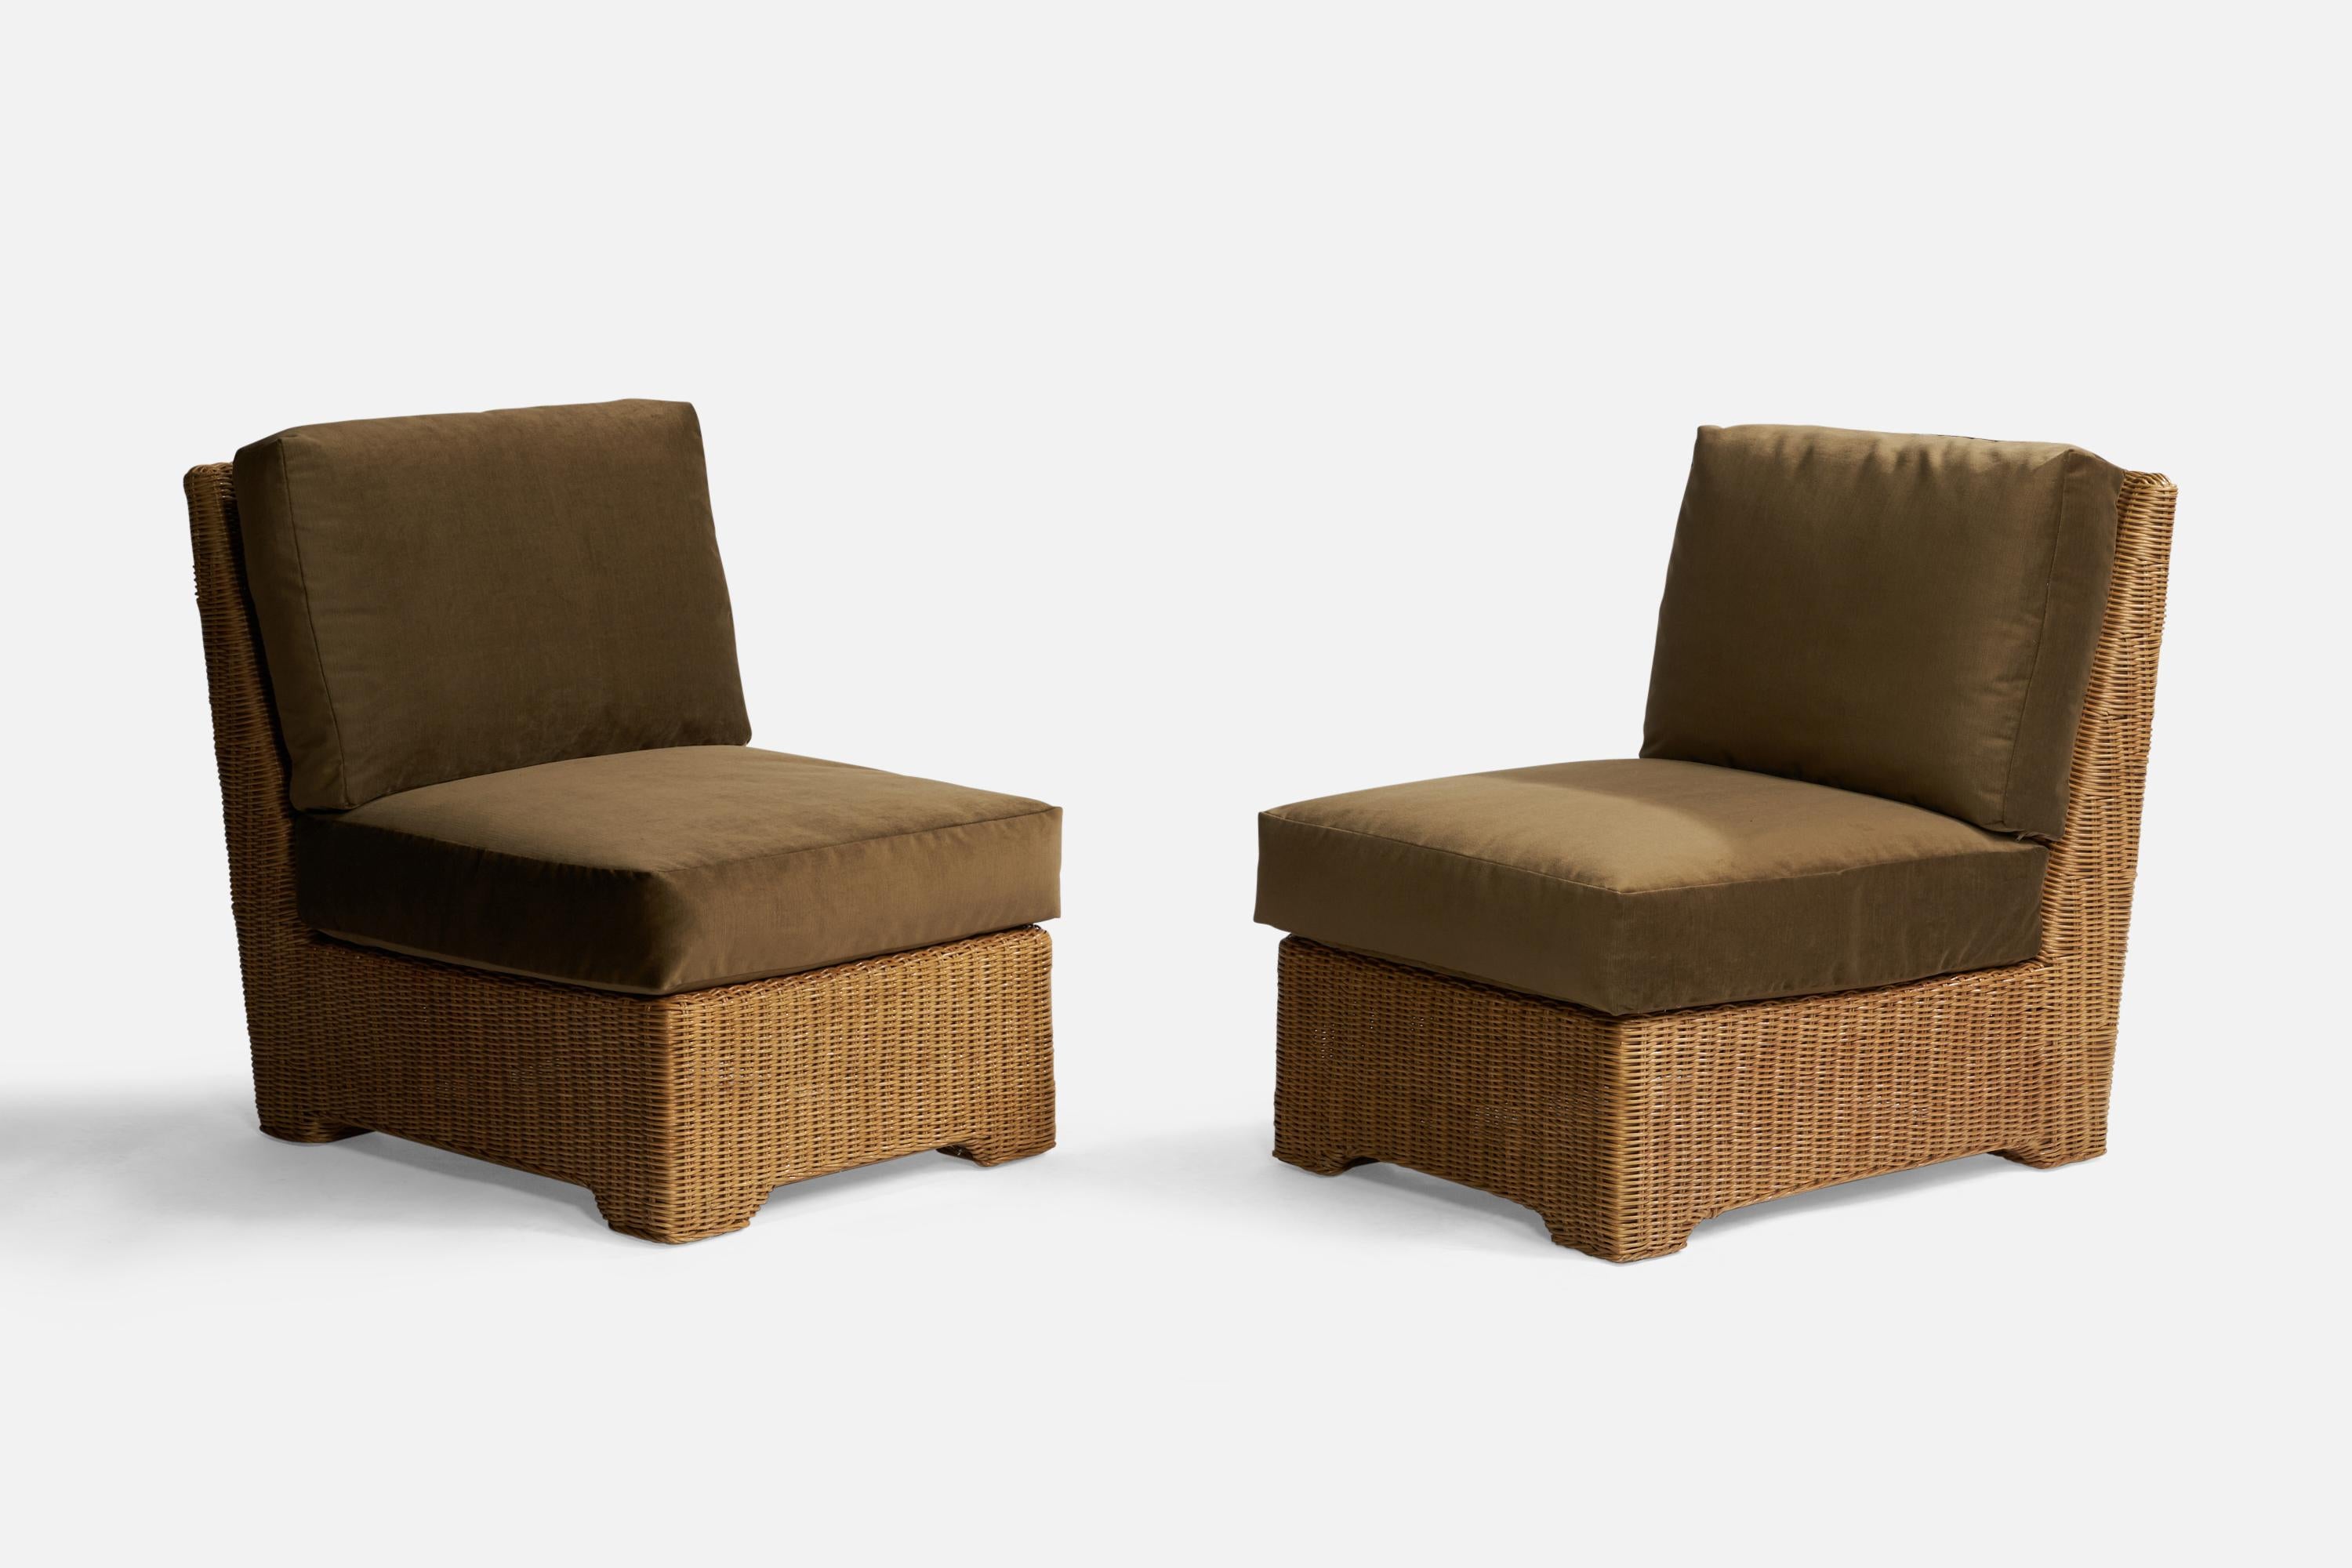 Ein Paar Sessel aus Rattan und grünem Samt, entworfen und hergestellt in den USA, ca. 1970er Jahre.

Sitzhöhe: 18